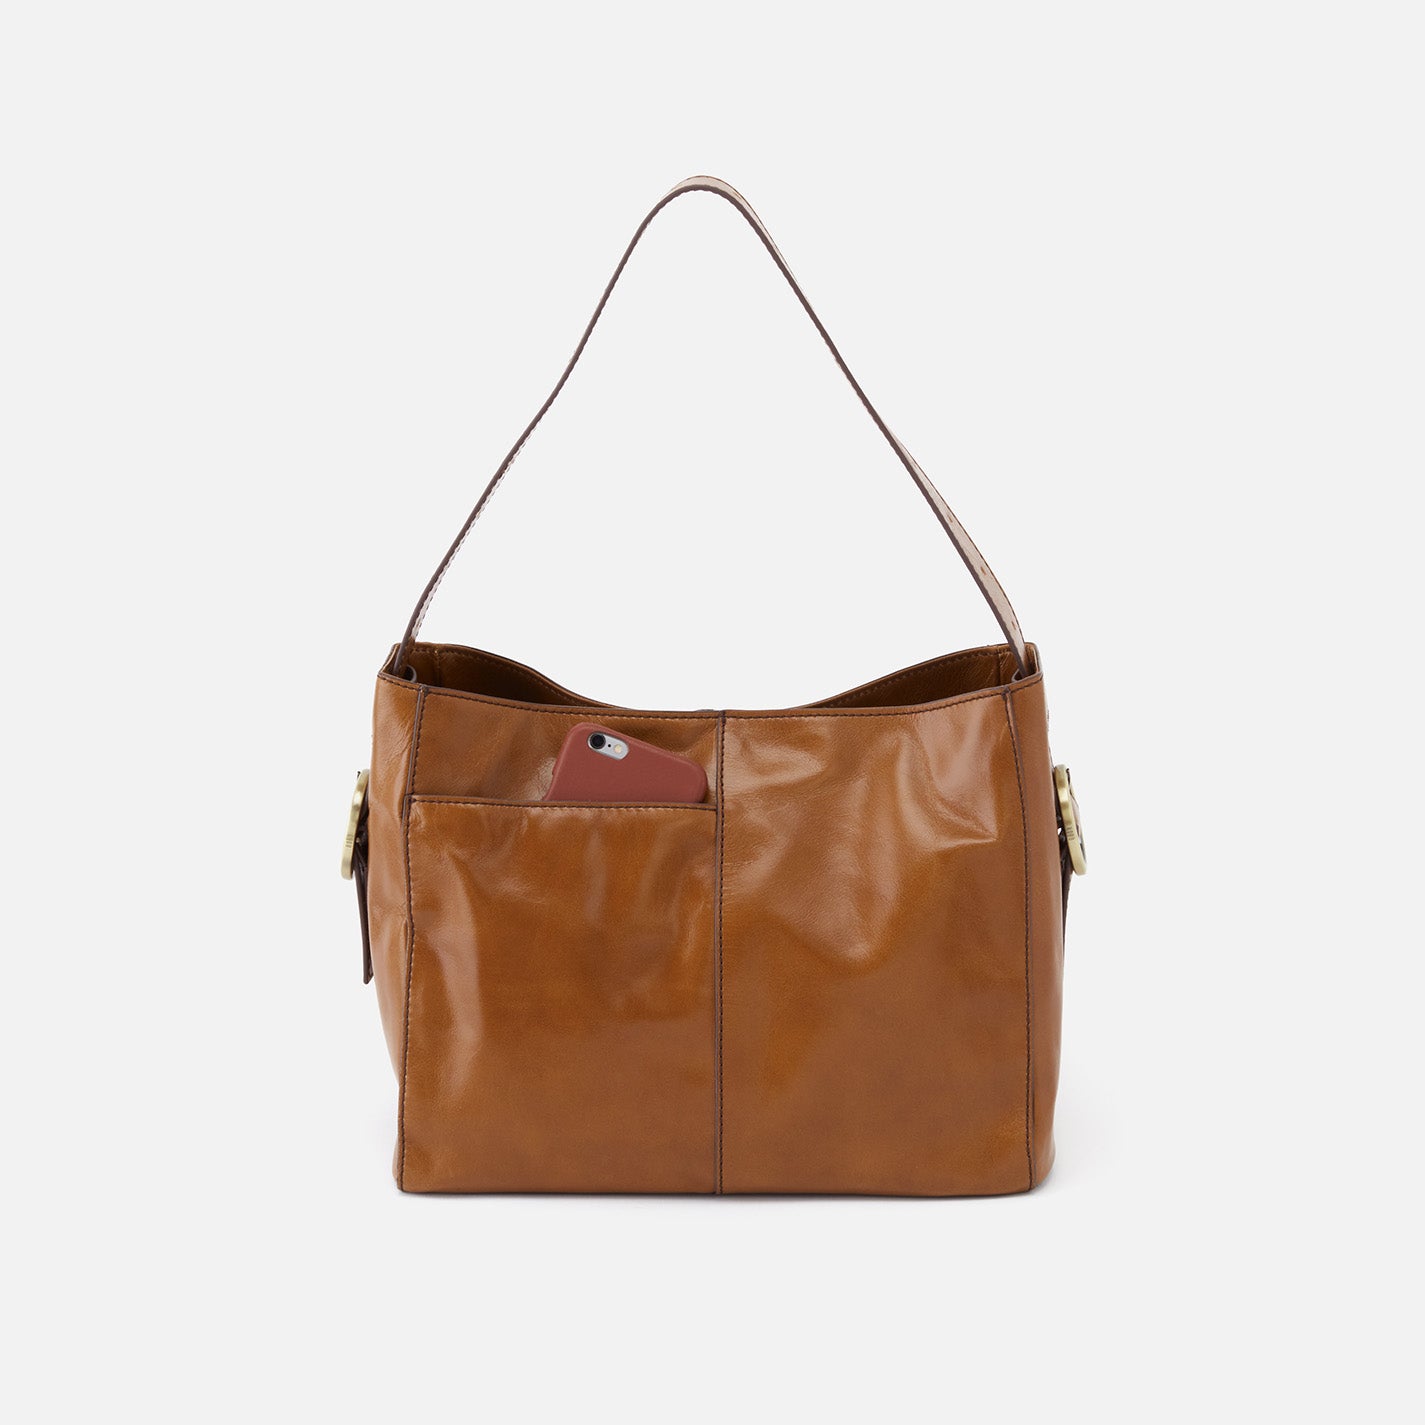 HOBO Vintage Hide Collection Render Leather Shoulder Bag